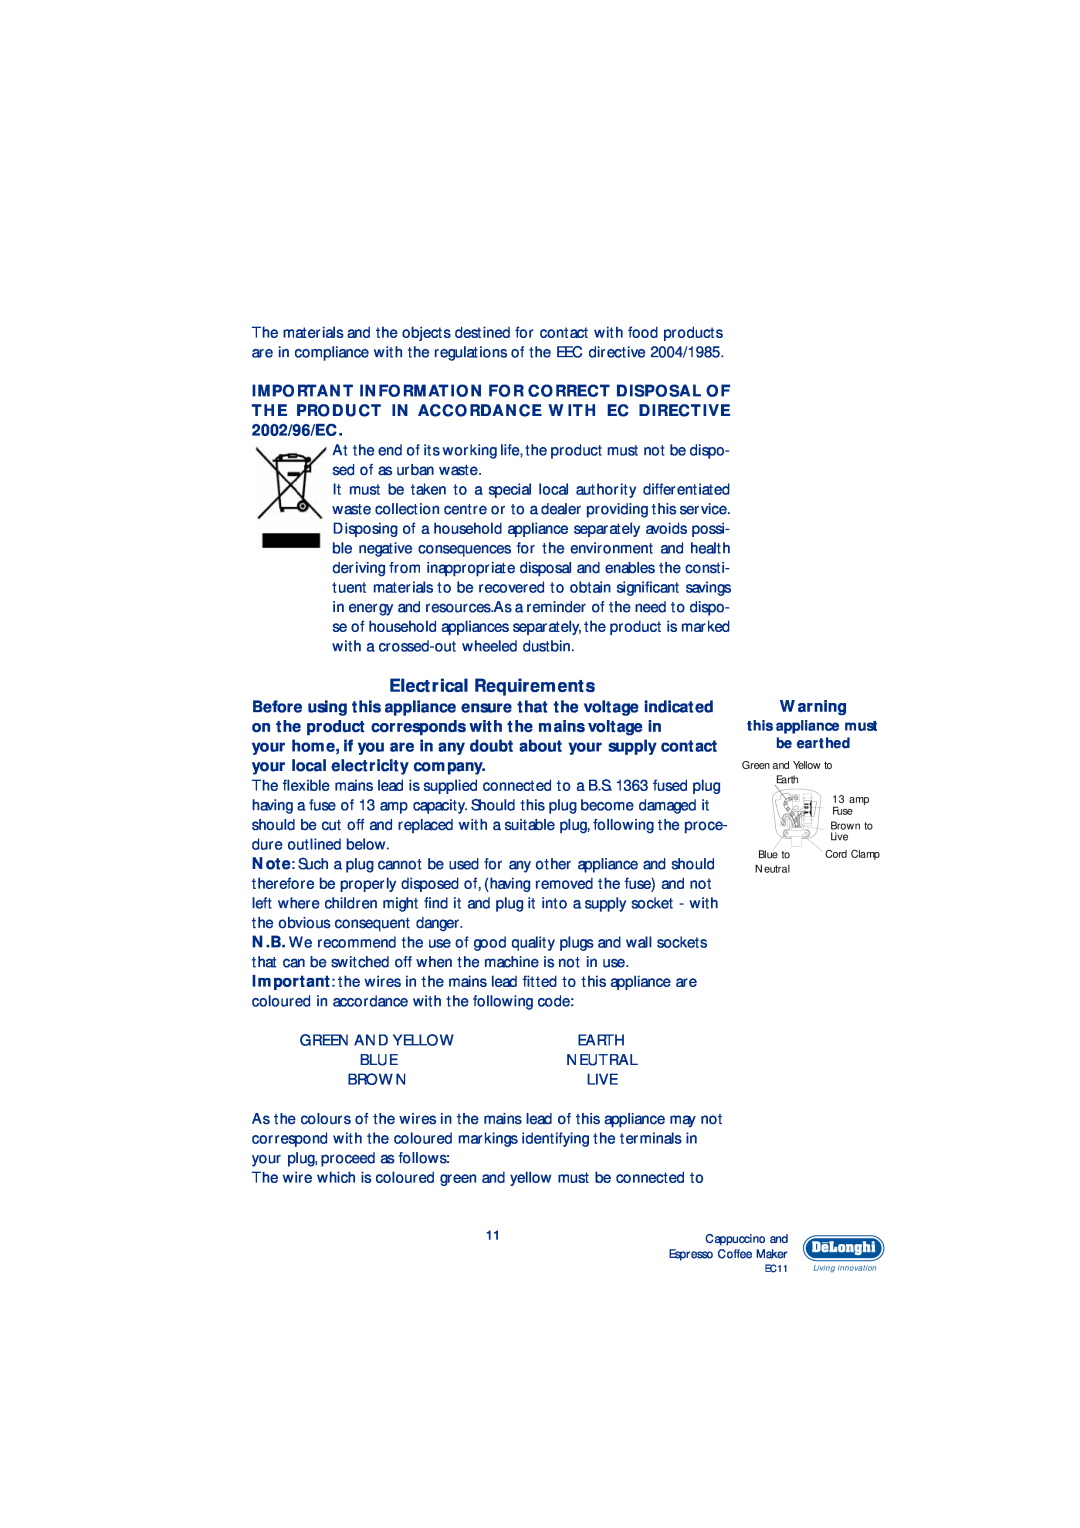 DeLonghi EC11 manual Electrical Requirements 